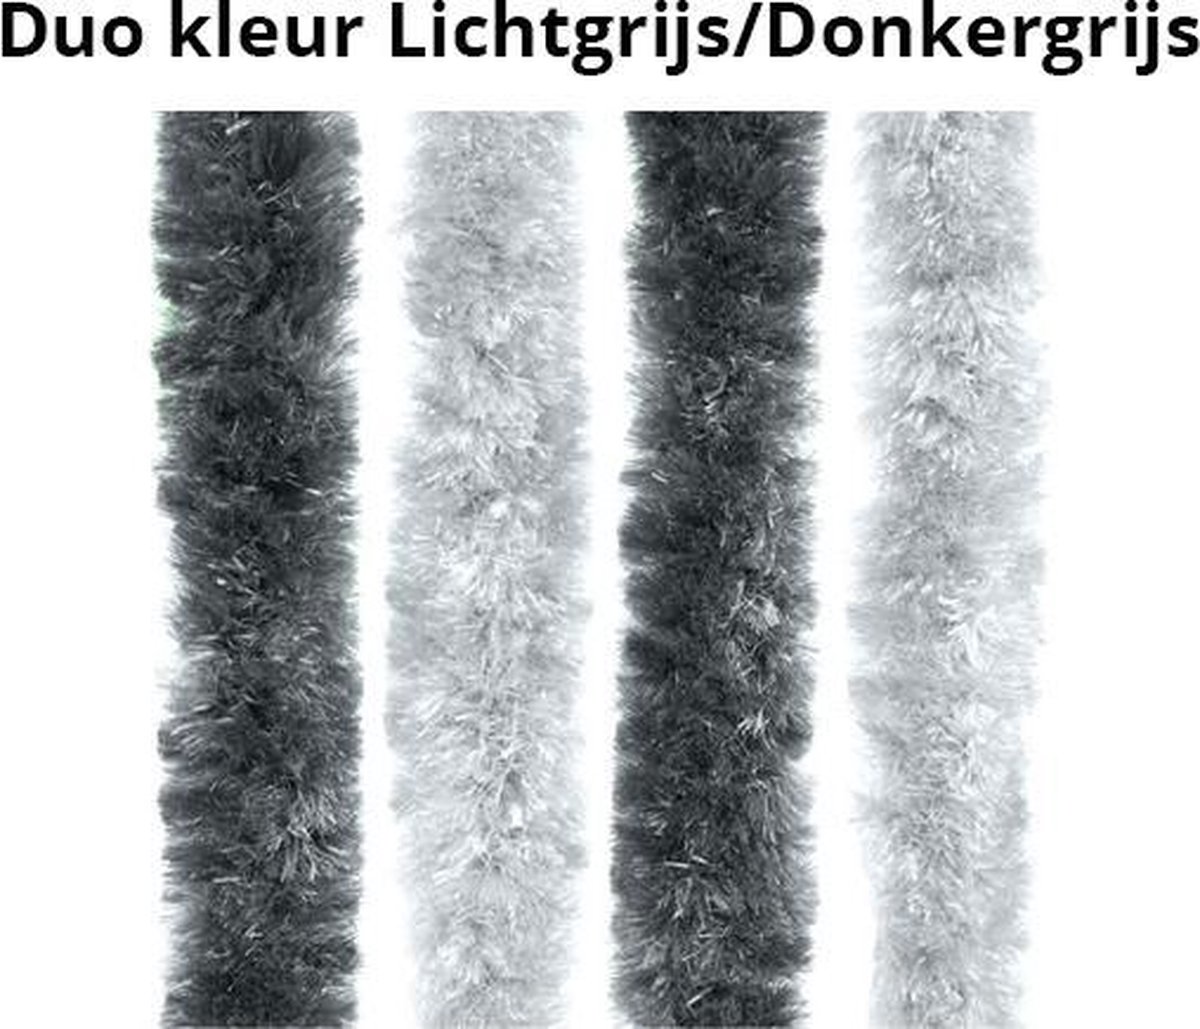 Kattenstaart Vliegengordijn - Deurgordijn - Fluweel - 100 x 210 cm - Lichtgrijs/Donkergrijs